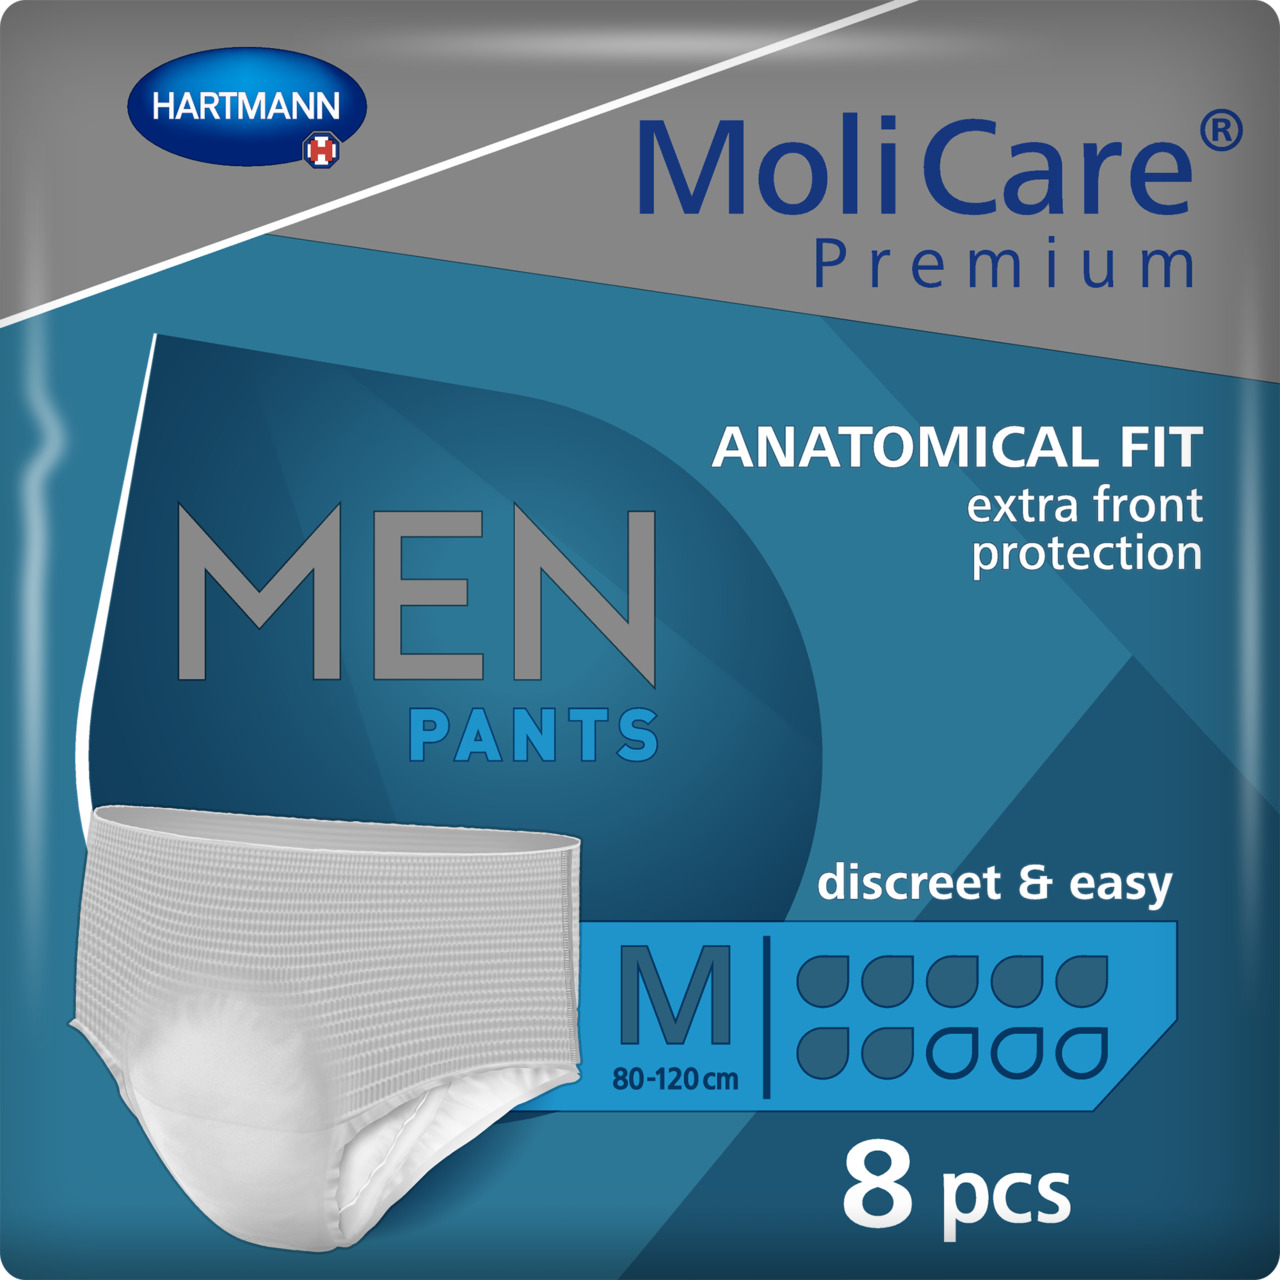 MoliCare Premium Men Pants 7 Drops Size M (M, L)